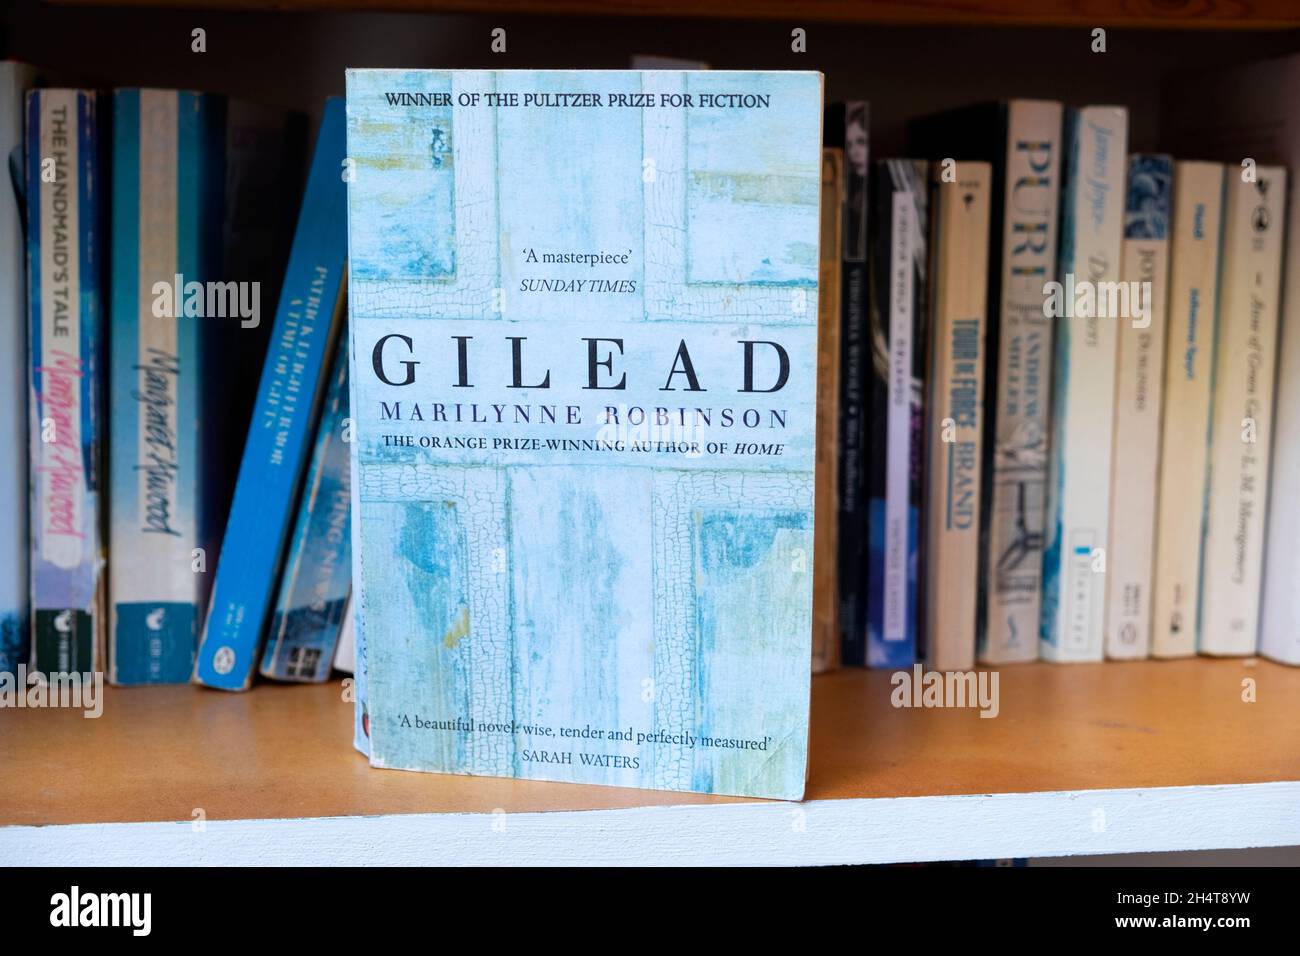 Gilead libro copertina romanzo titolo su una libreria da premiata donna autore americano scrittore romanziere Marilynne Robinson KATHY DEWITT Foto Stock